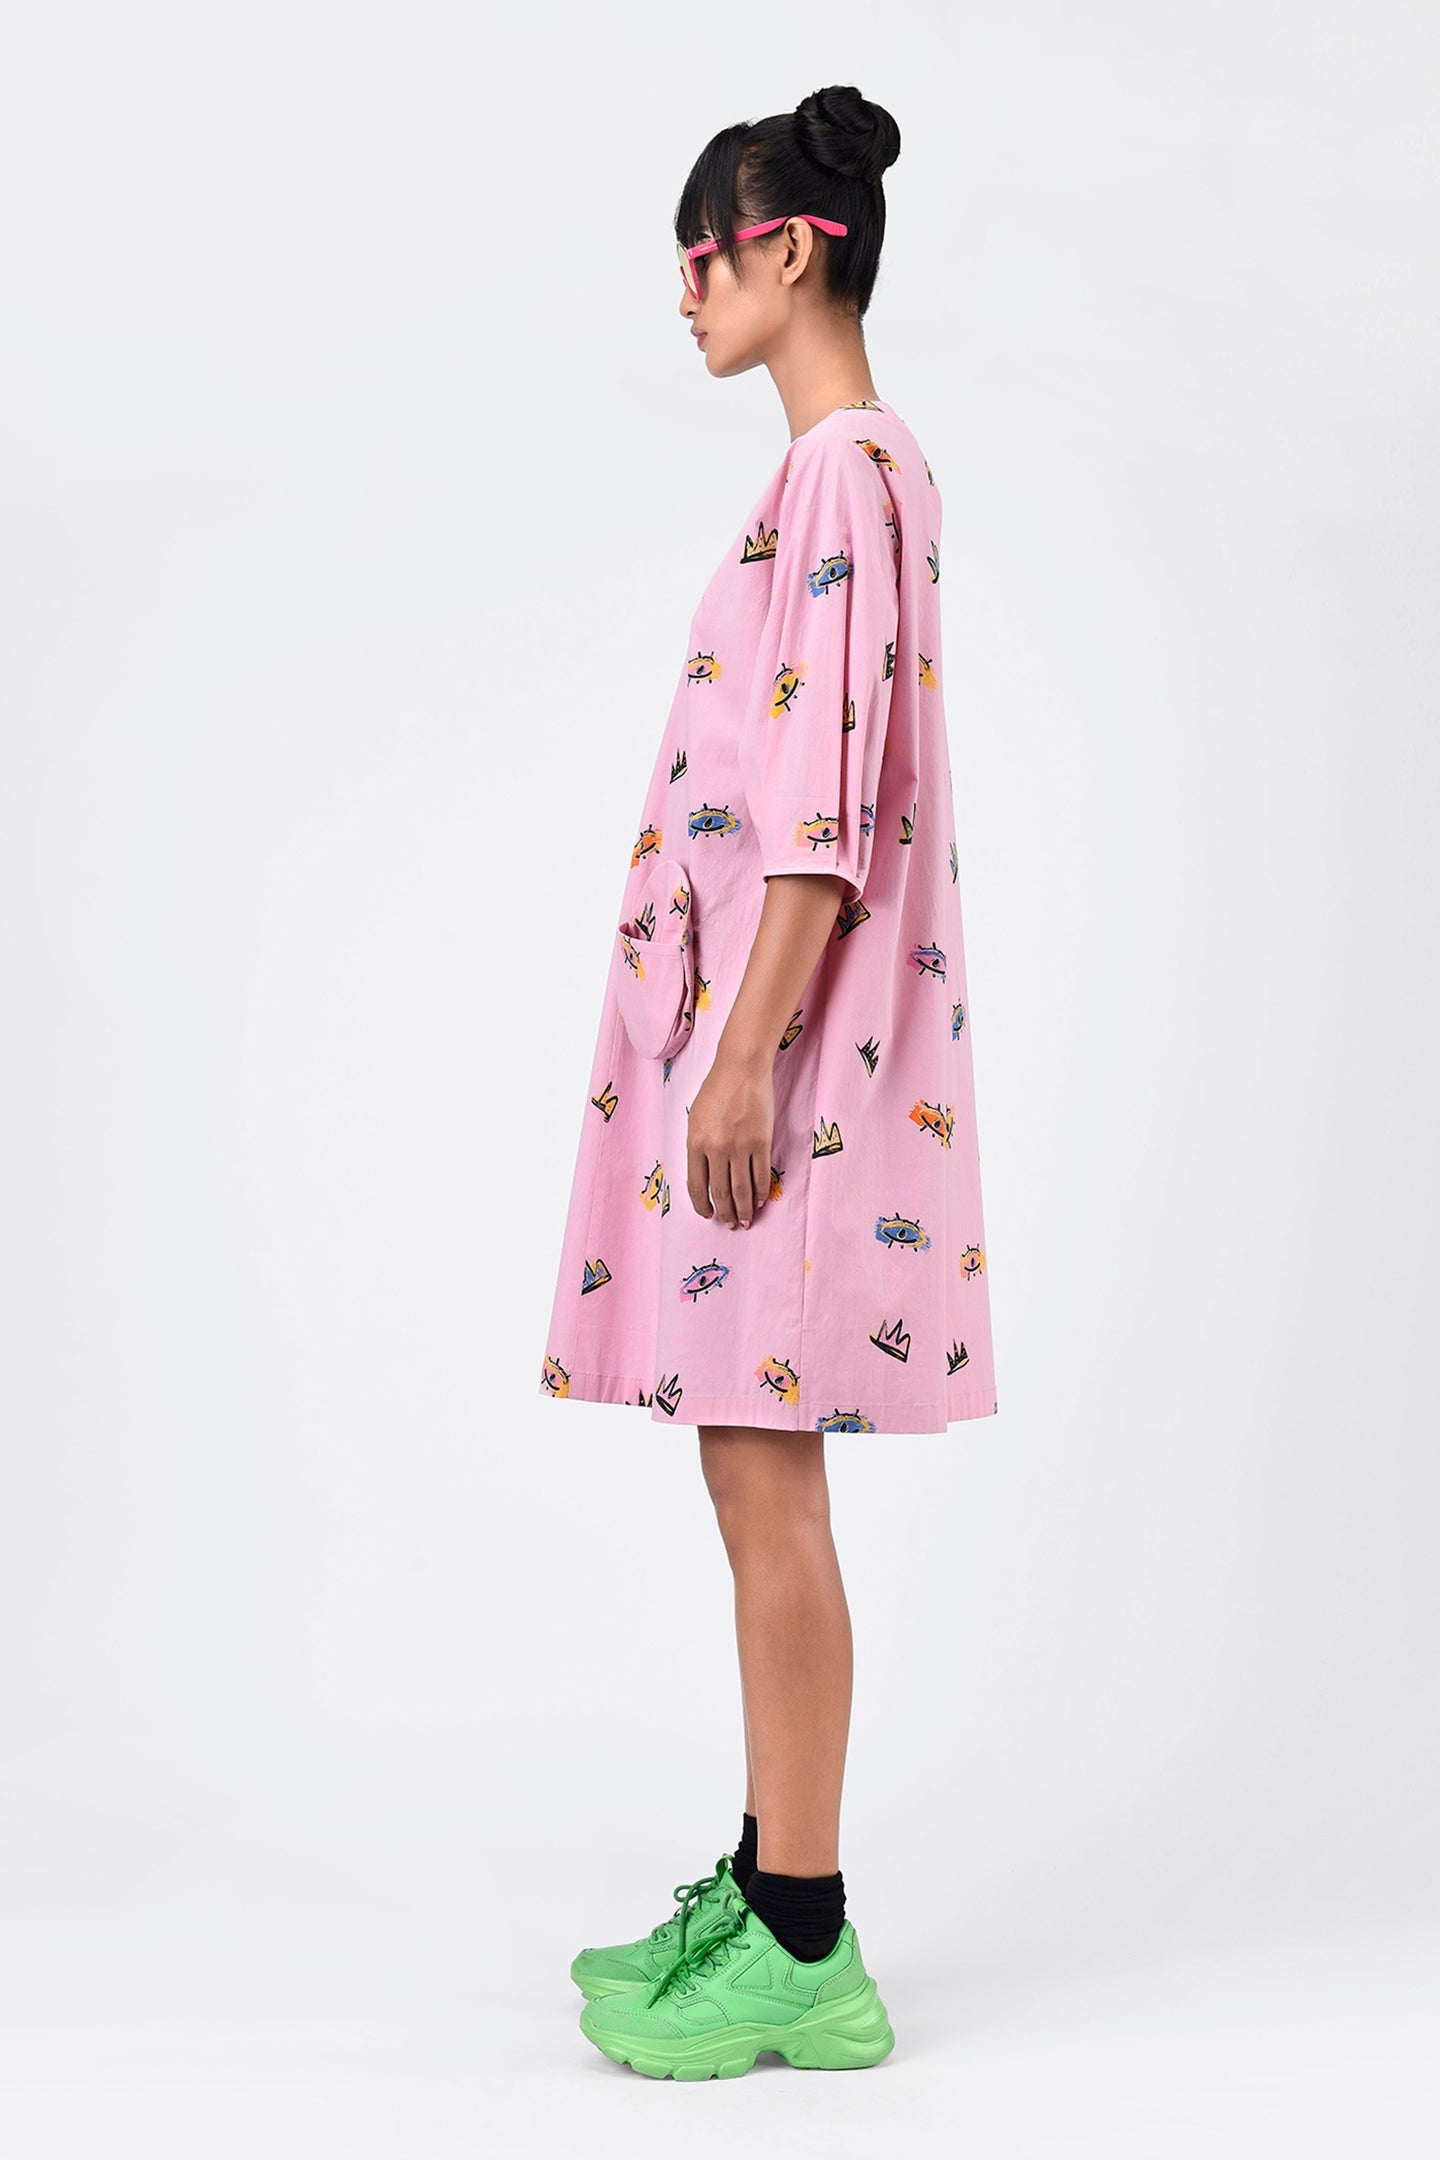 Printed Dress With Detachable Sling Bag